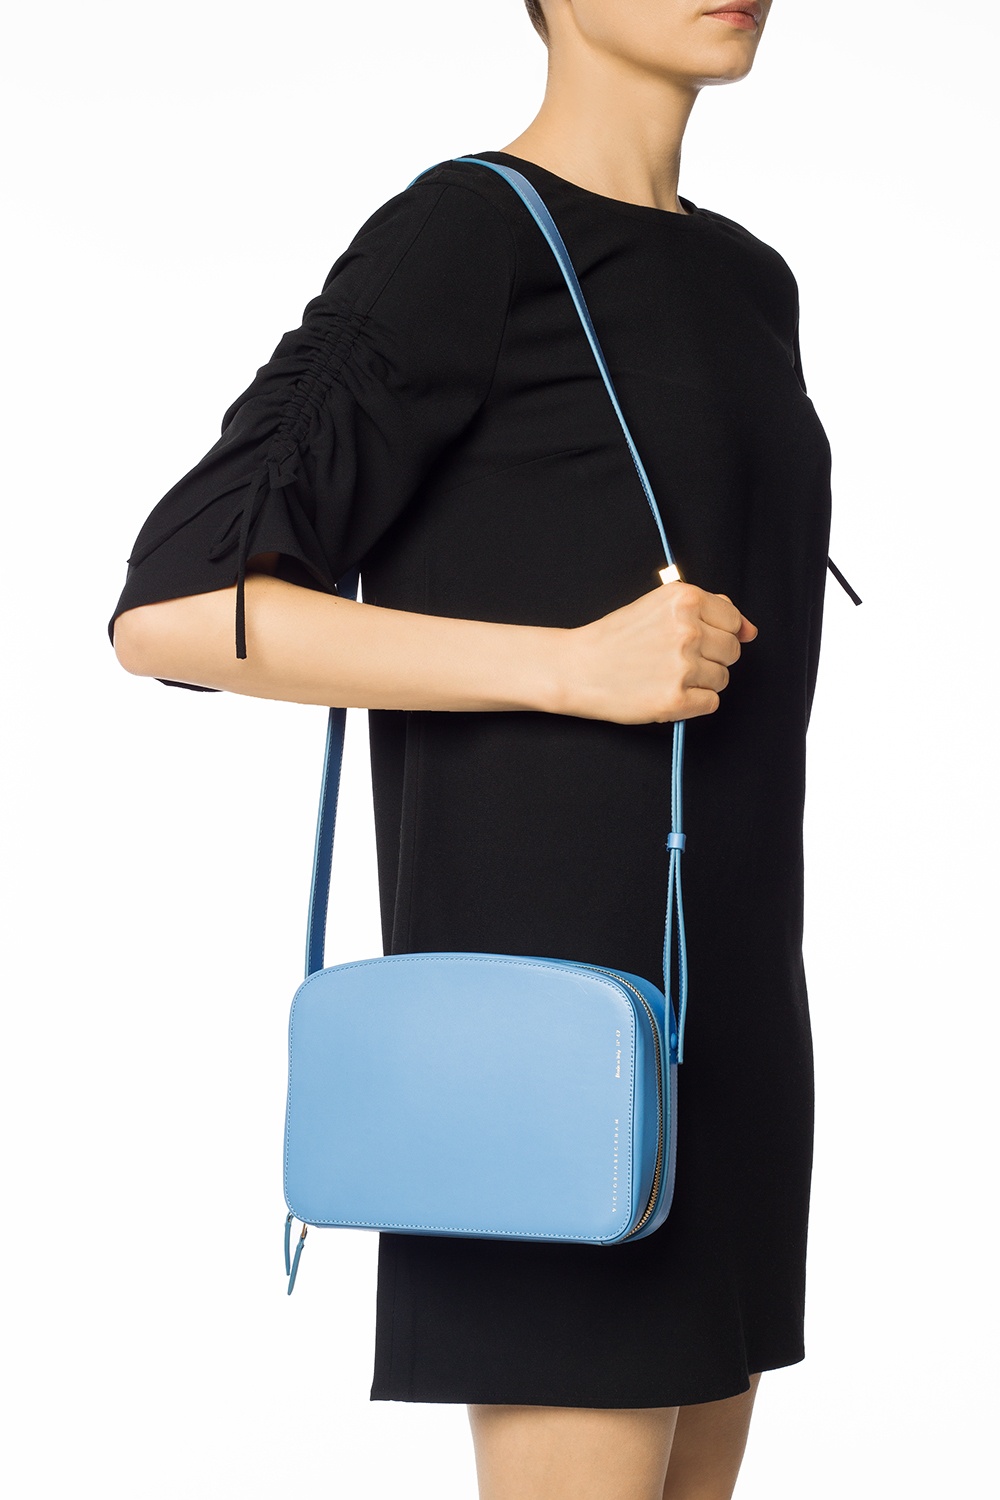 Victoria Beckham 'Vanity Camera' shoulder bag